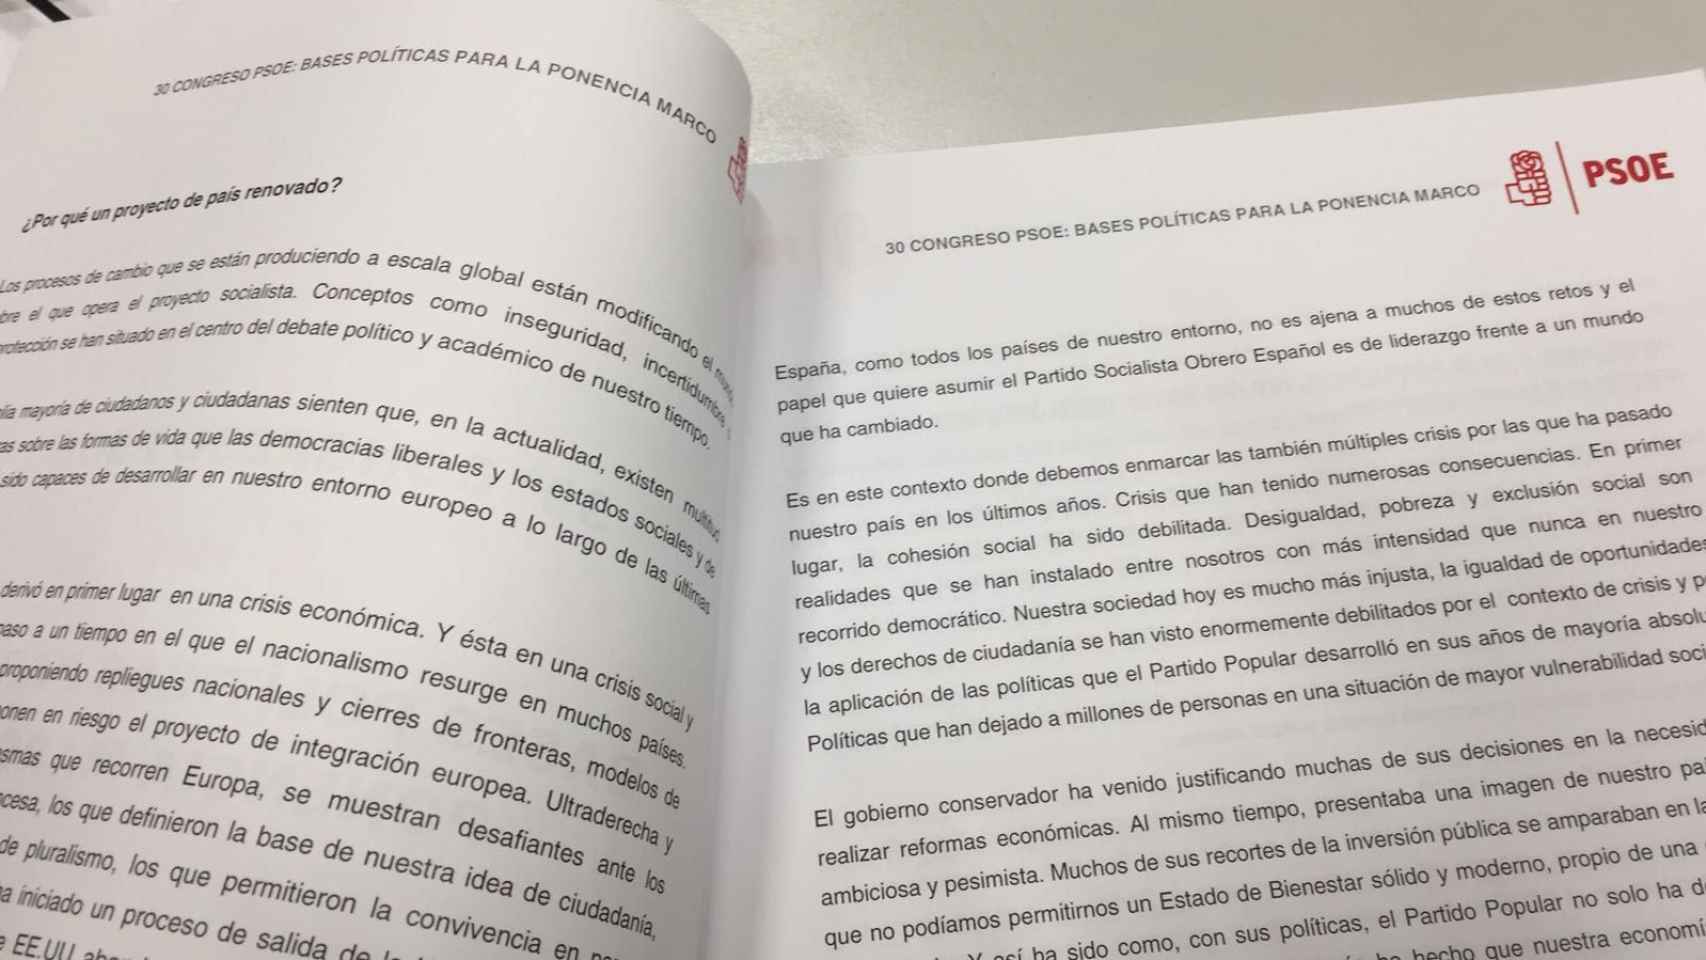 Un error tipográfico en los preparativos del congreso del PSOE / CG